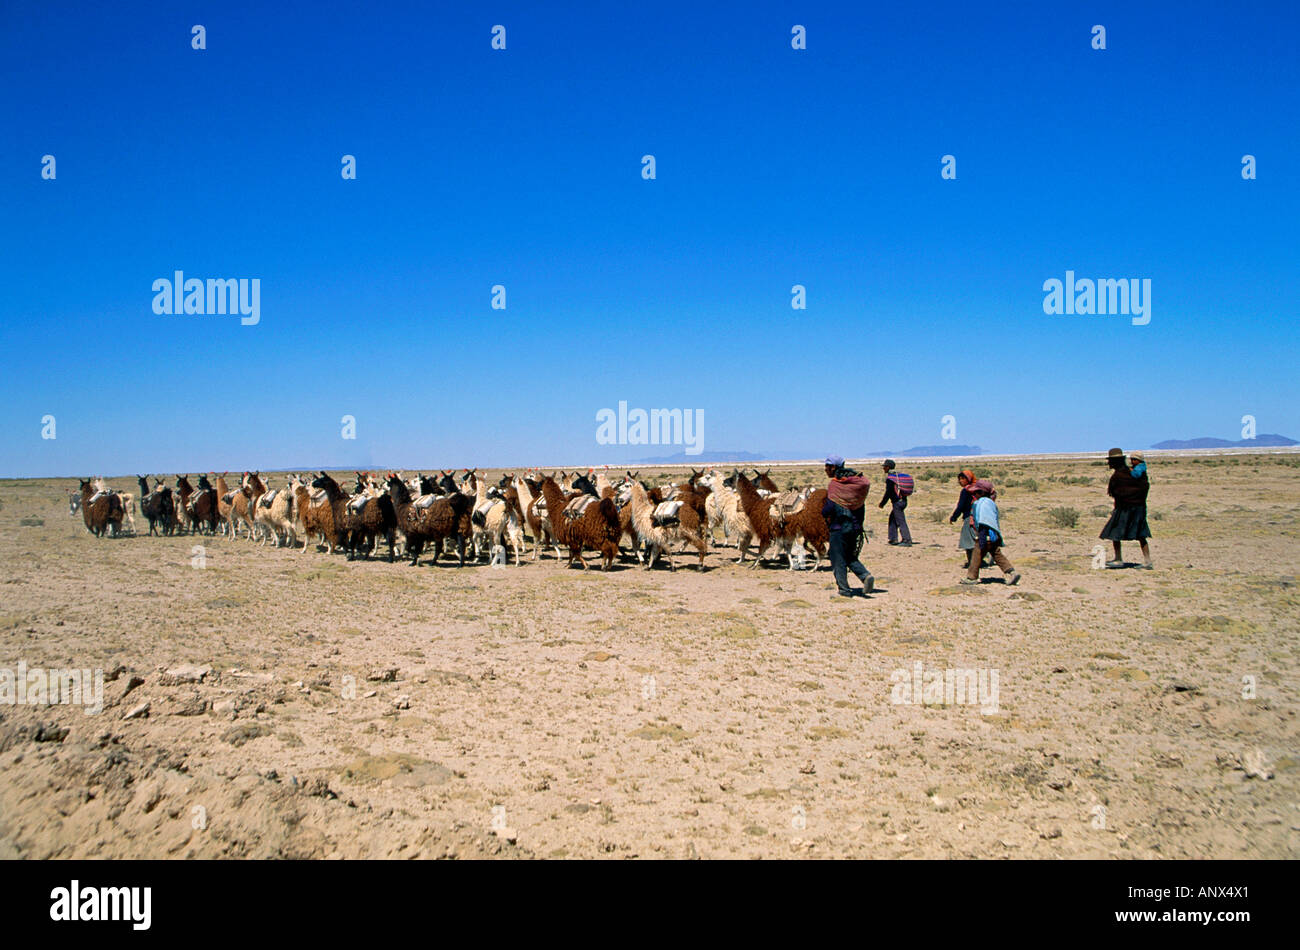 Lama caravana transportando sal cerca de Salt Flat región del salar de Uyuni Bolivia altiplano altiplano andino Foto de stock